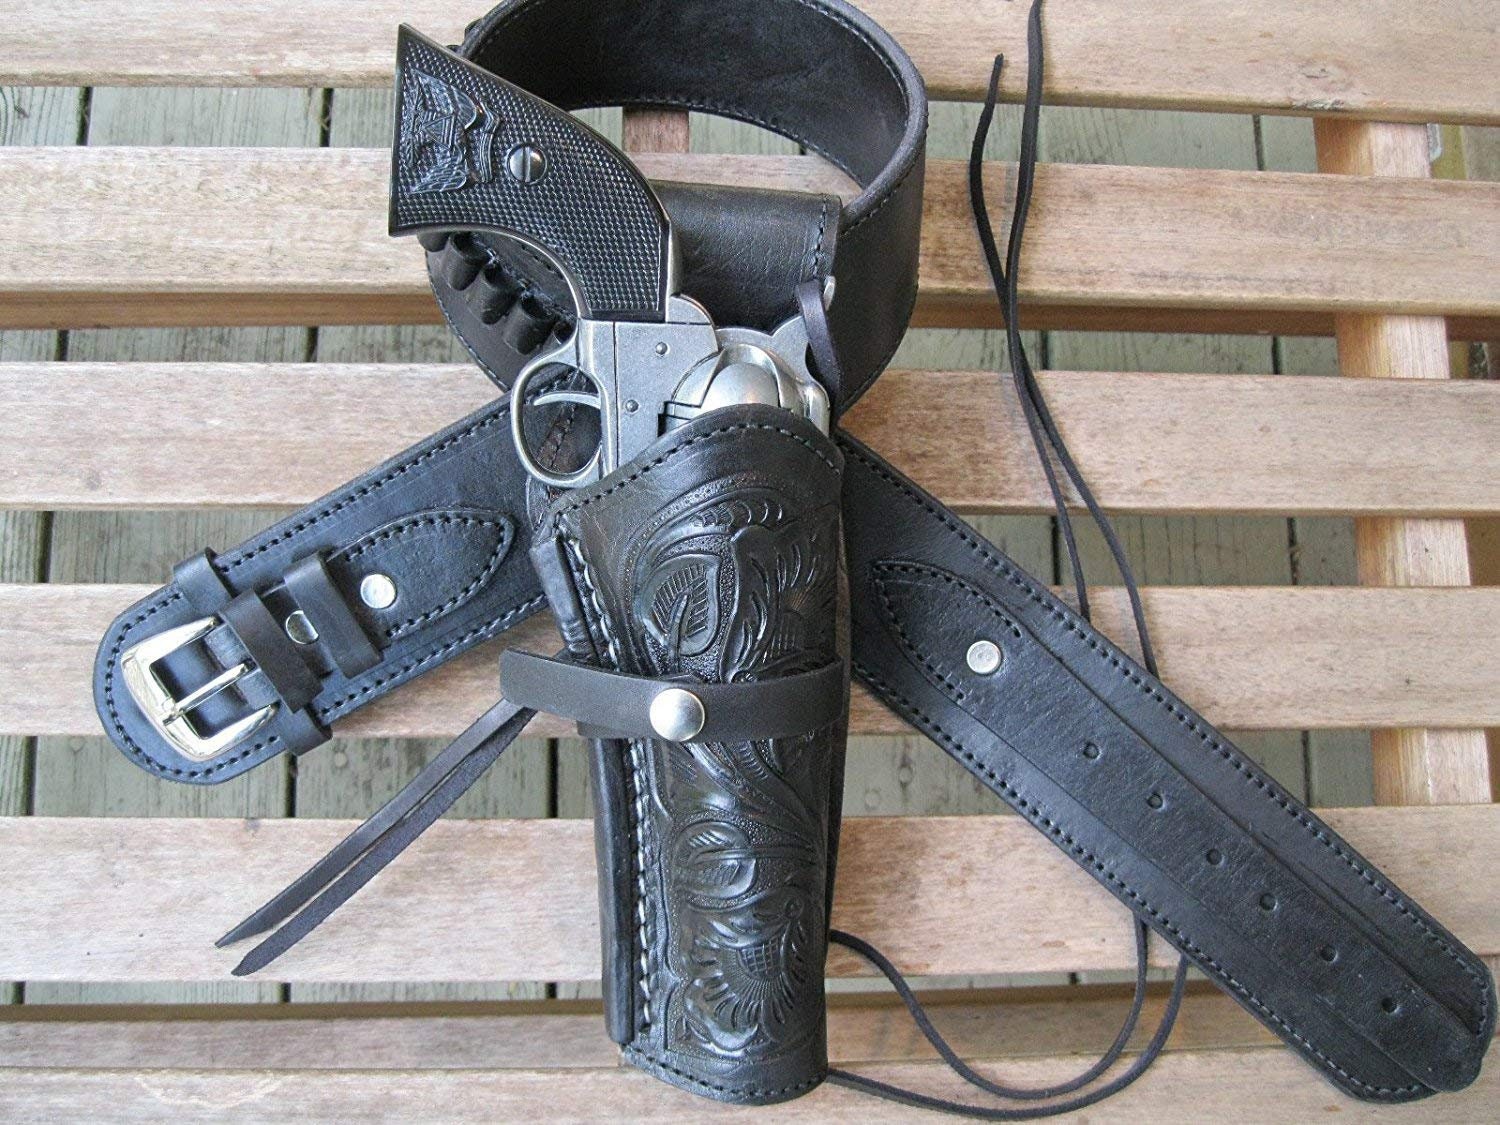 rafacampillos - Cinturón para calibre 44 y funda de revólver para colt.  Finished gunholster and cartridge belt cal. 44. #leather #western  #westerntack #gunholster#artesaniaencuero #pistoleras #canana  #cowboyshooting #cowboy #cinturones #cuero #armas